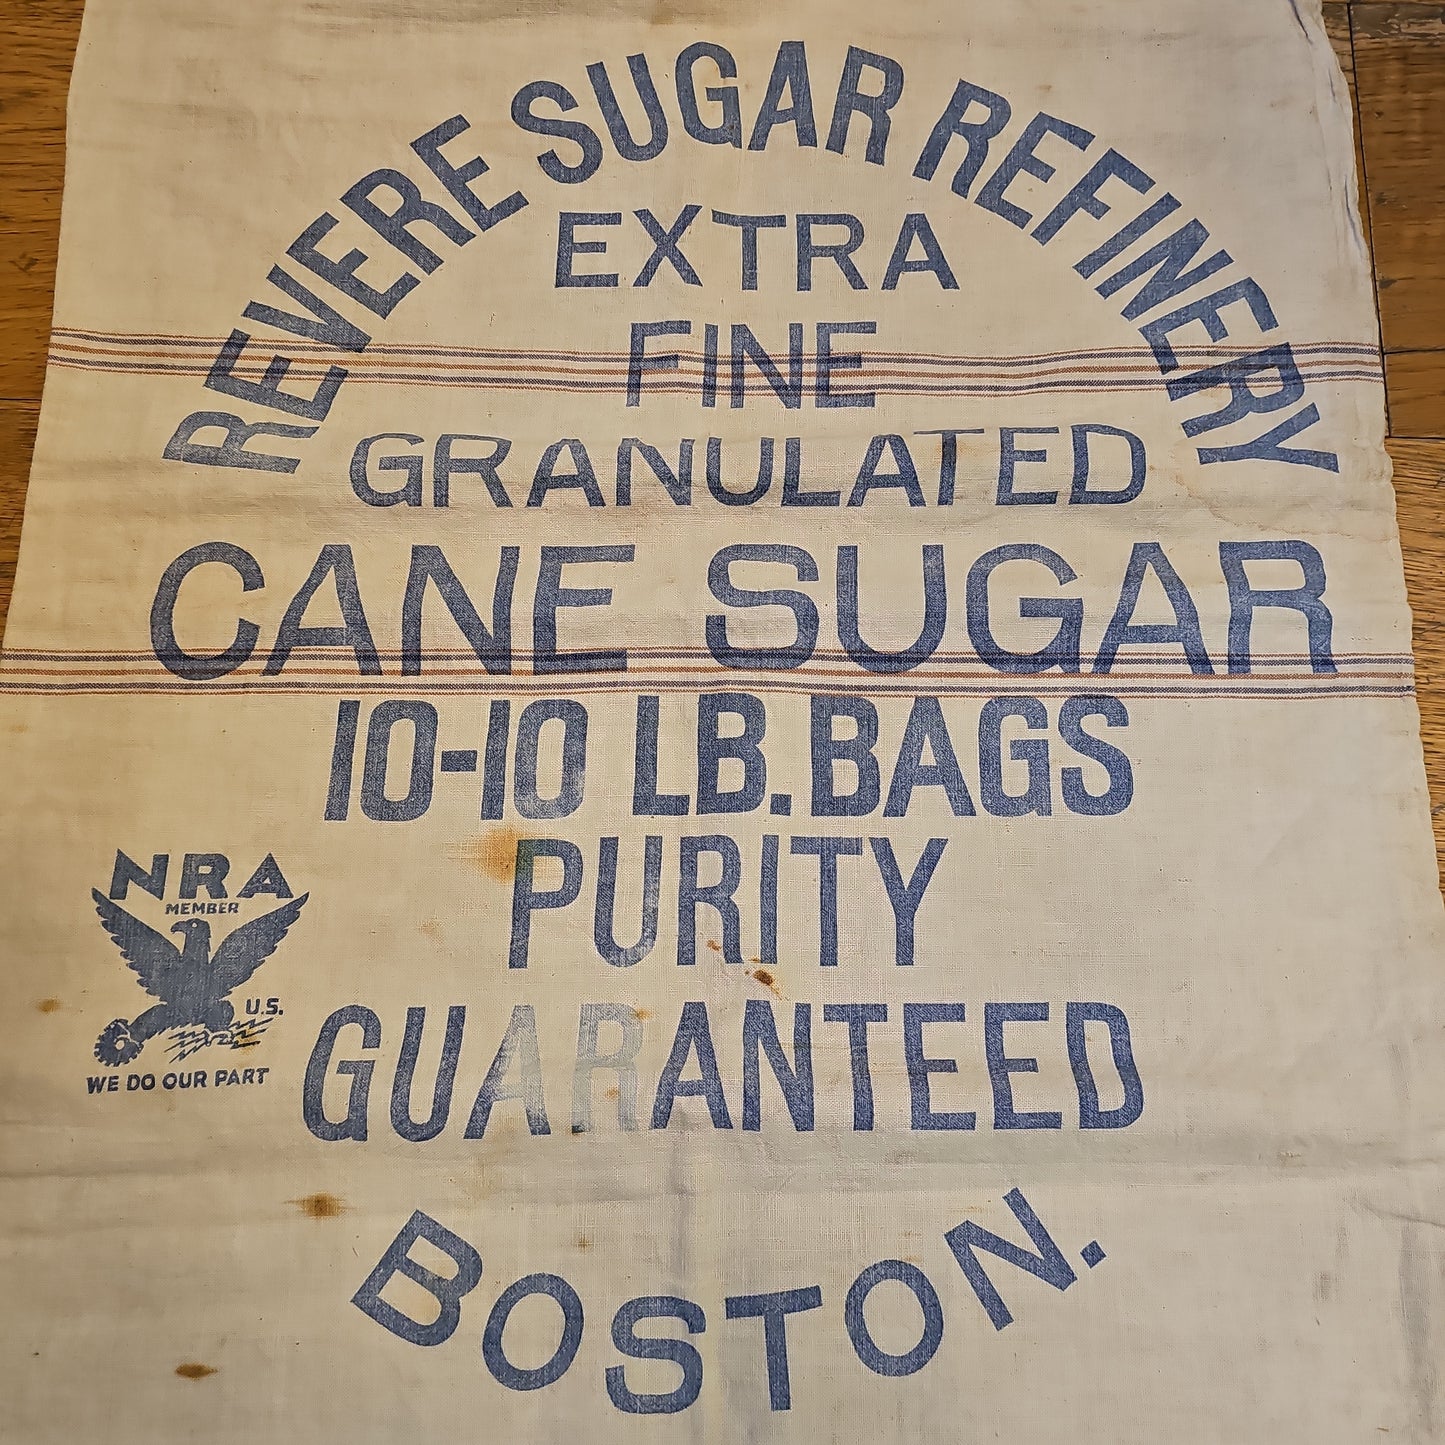 Revere Sugar Refinery, 10-Lb Cotton Grain Sack